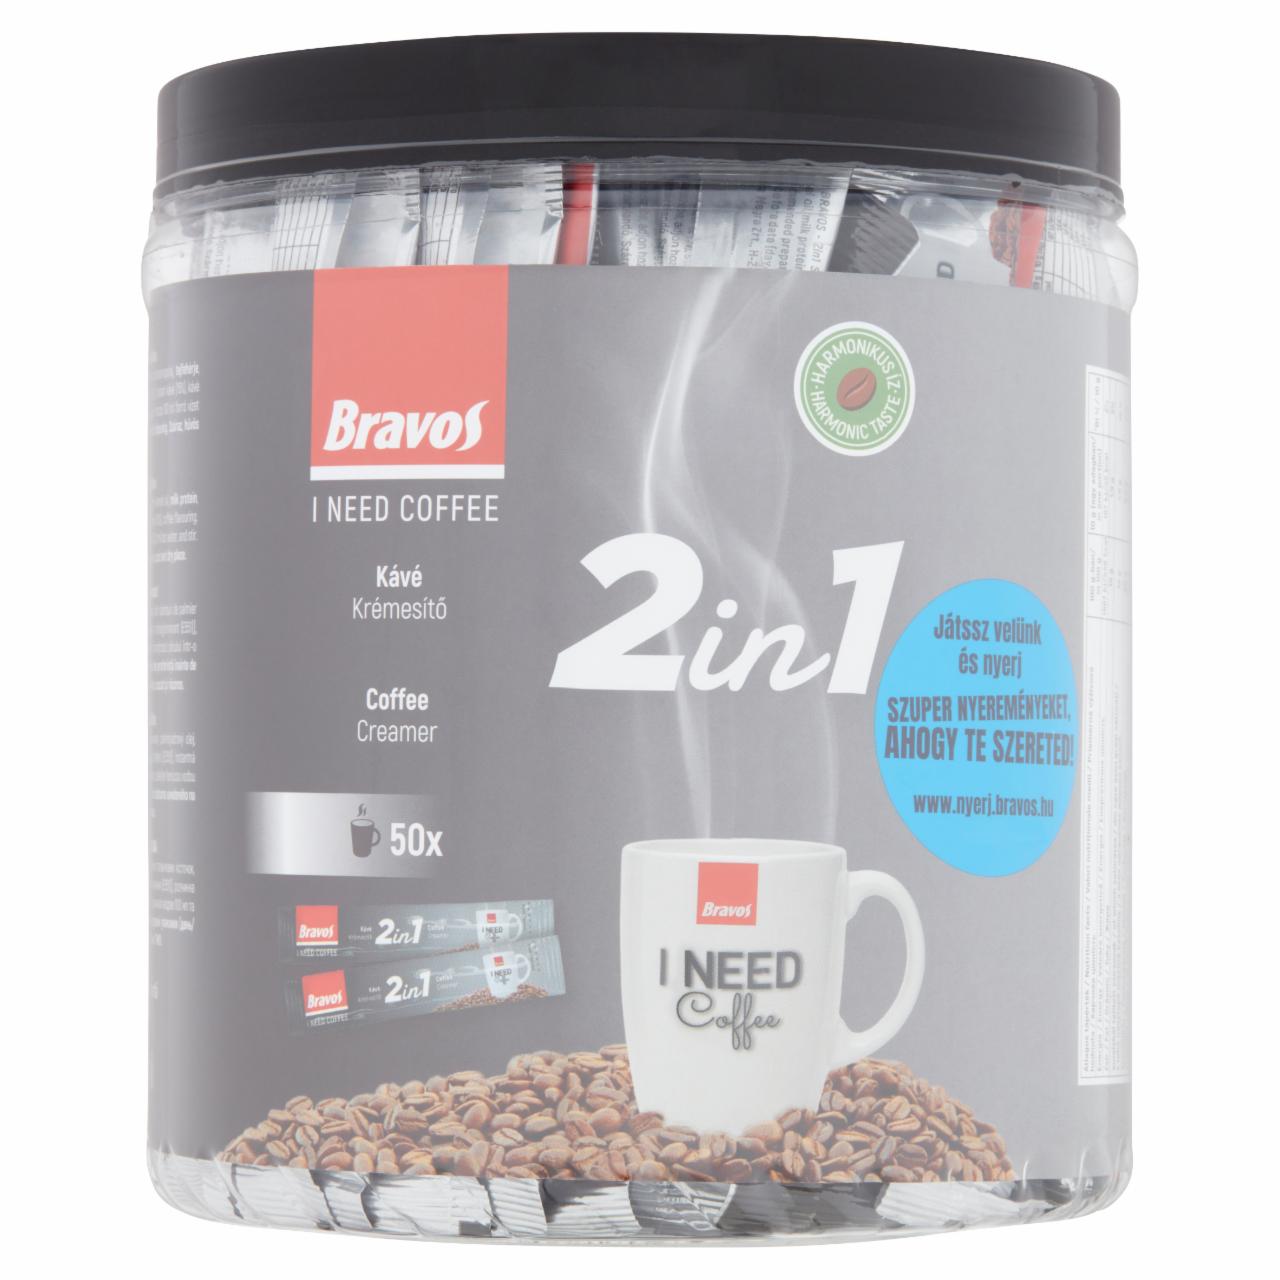 Képek - Bravos 2in1 instant kávéspecialitás 50 x 10 g (500 g)